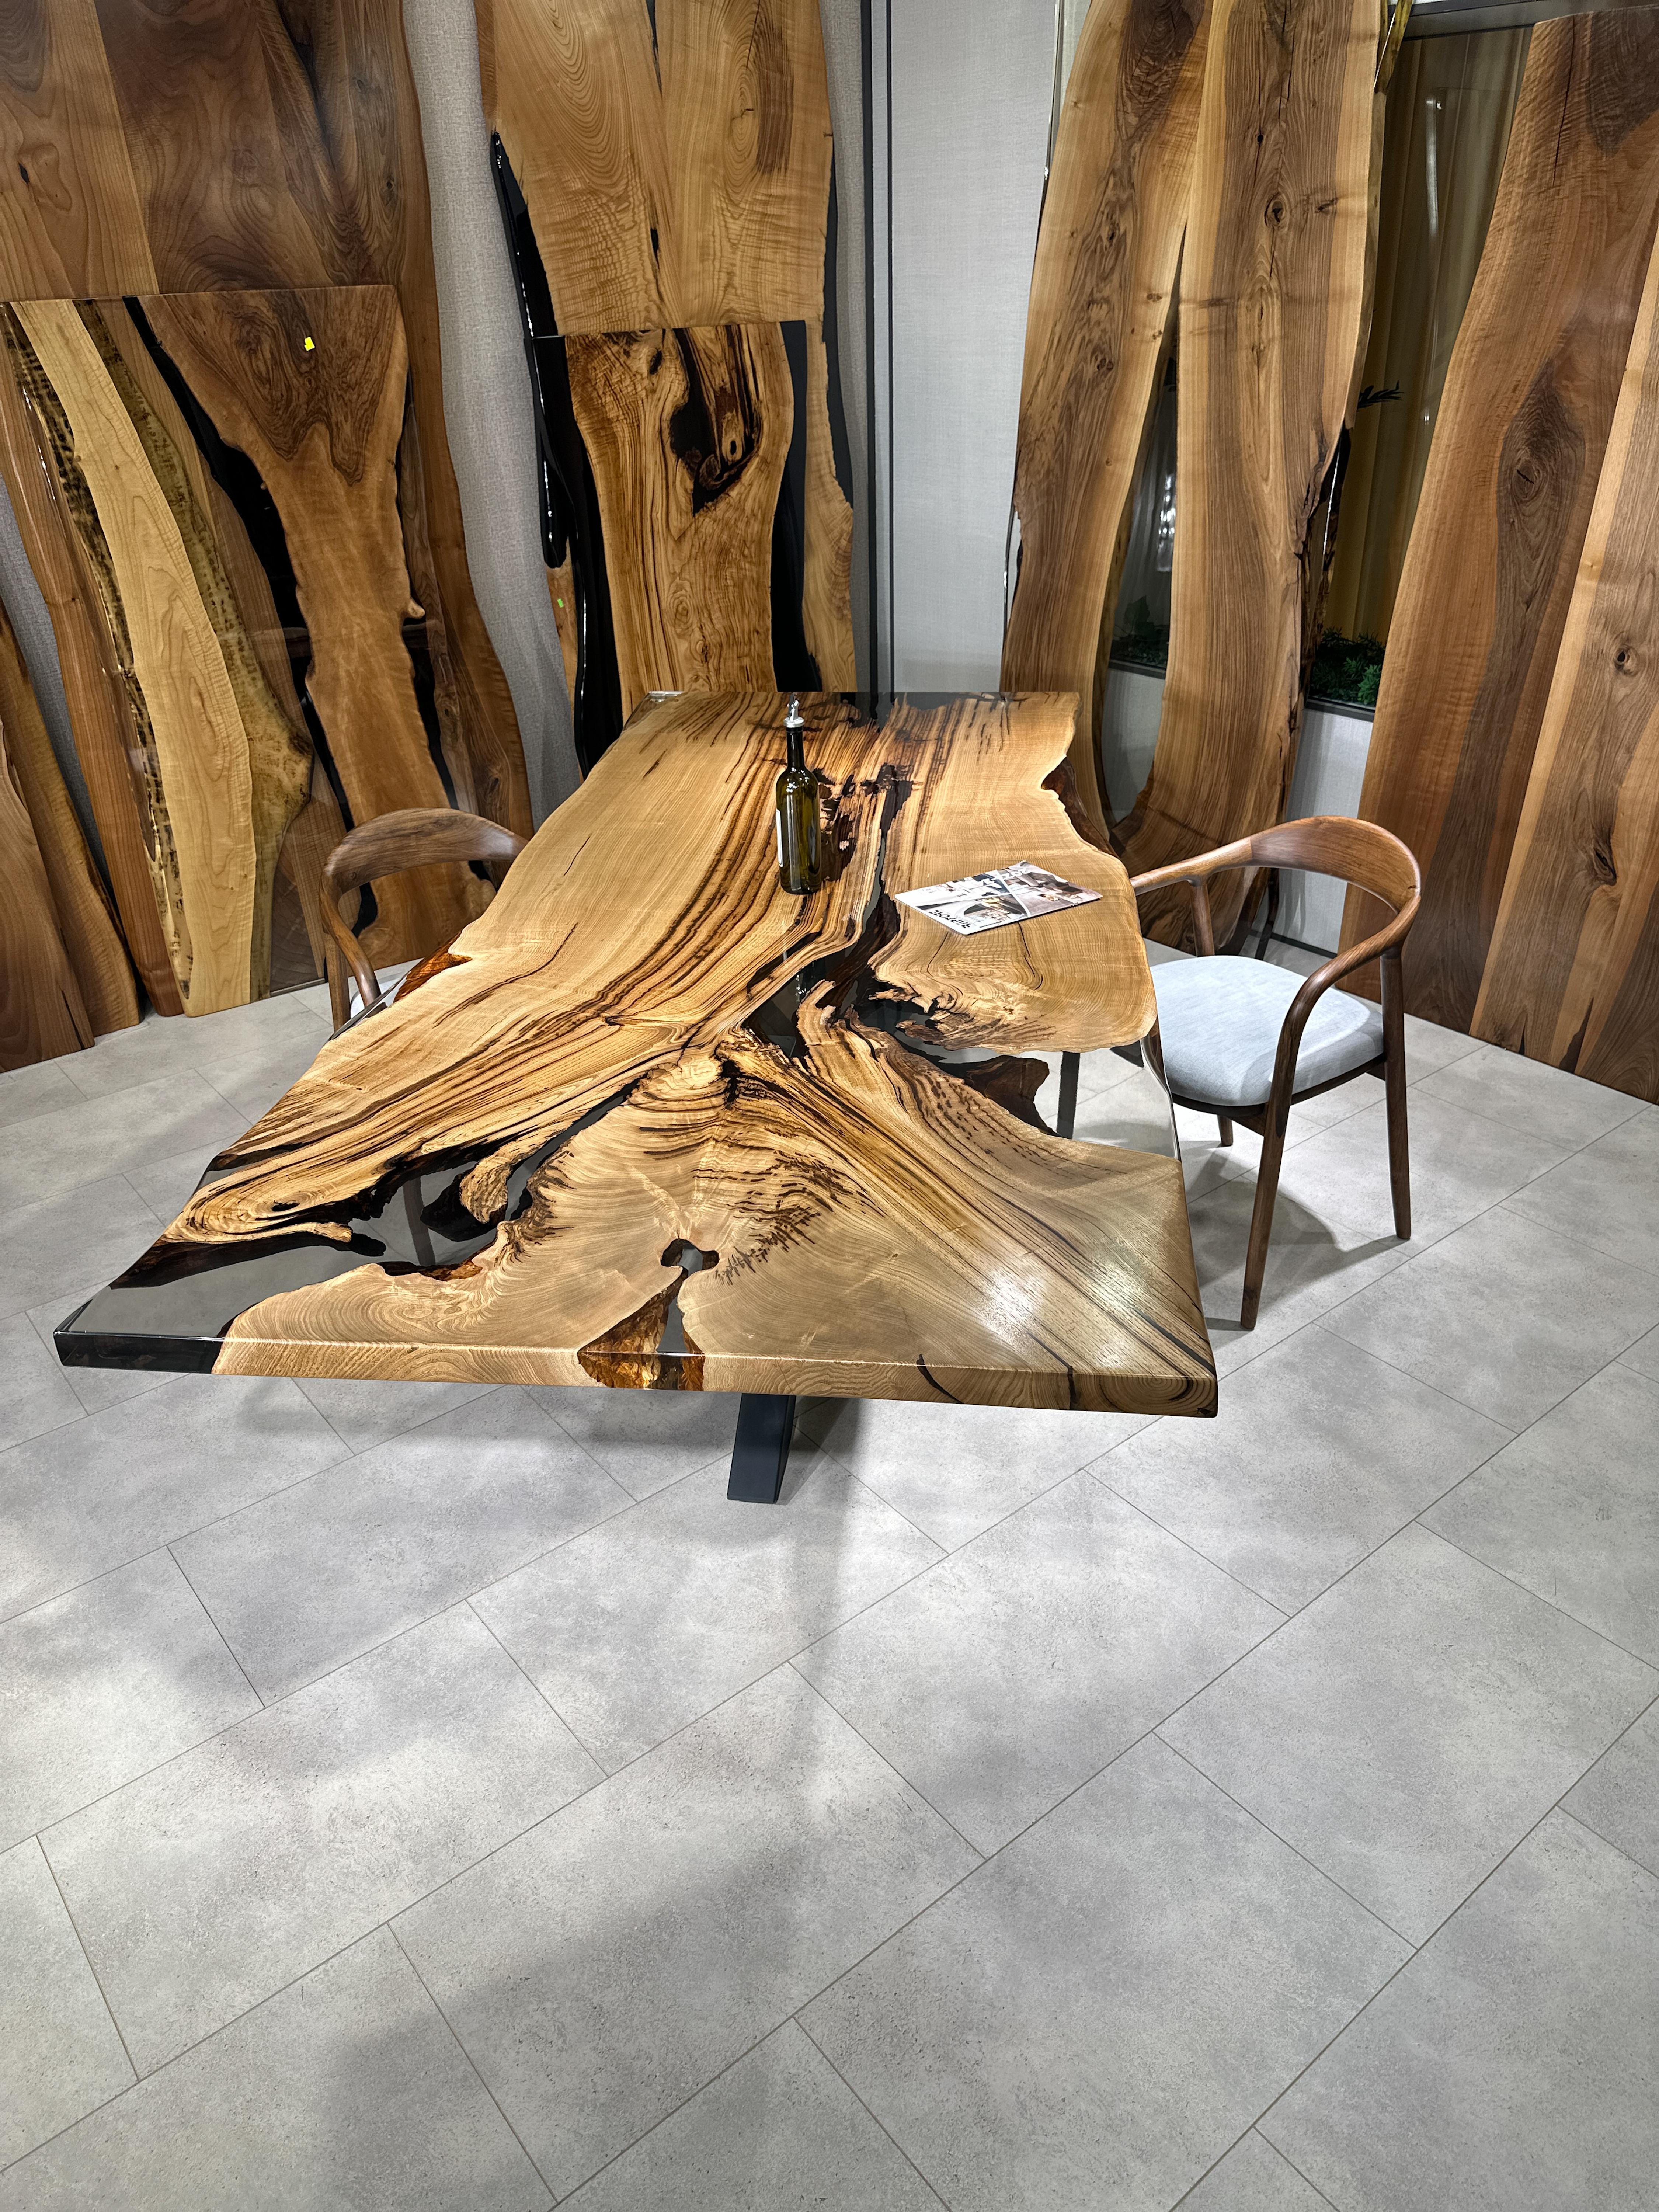 Kastanie Custom Clear Epoxy Resin Esstisch 

Dieser Tisch ist aus 500 Jahre altem Kastanienholz gefertigt. Die Maserung und die Struktur des Holzes beschreiben, wie ein natürliches Walnussholz aussieht.
Er kann als Esstisch oder als Konferenztisch